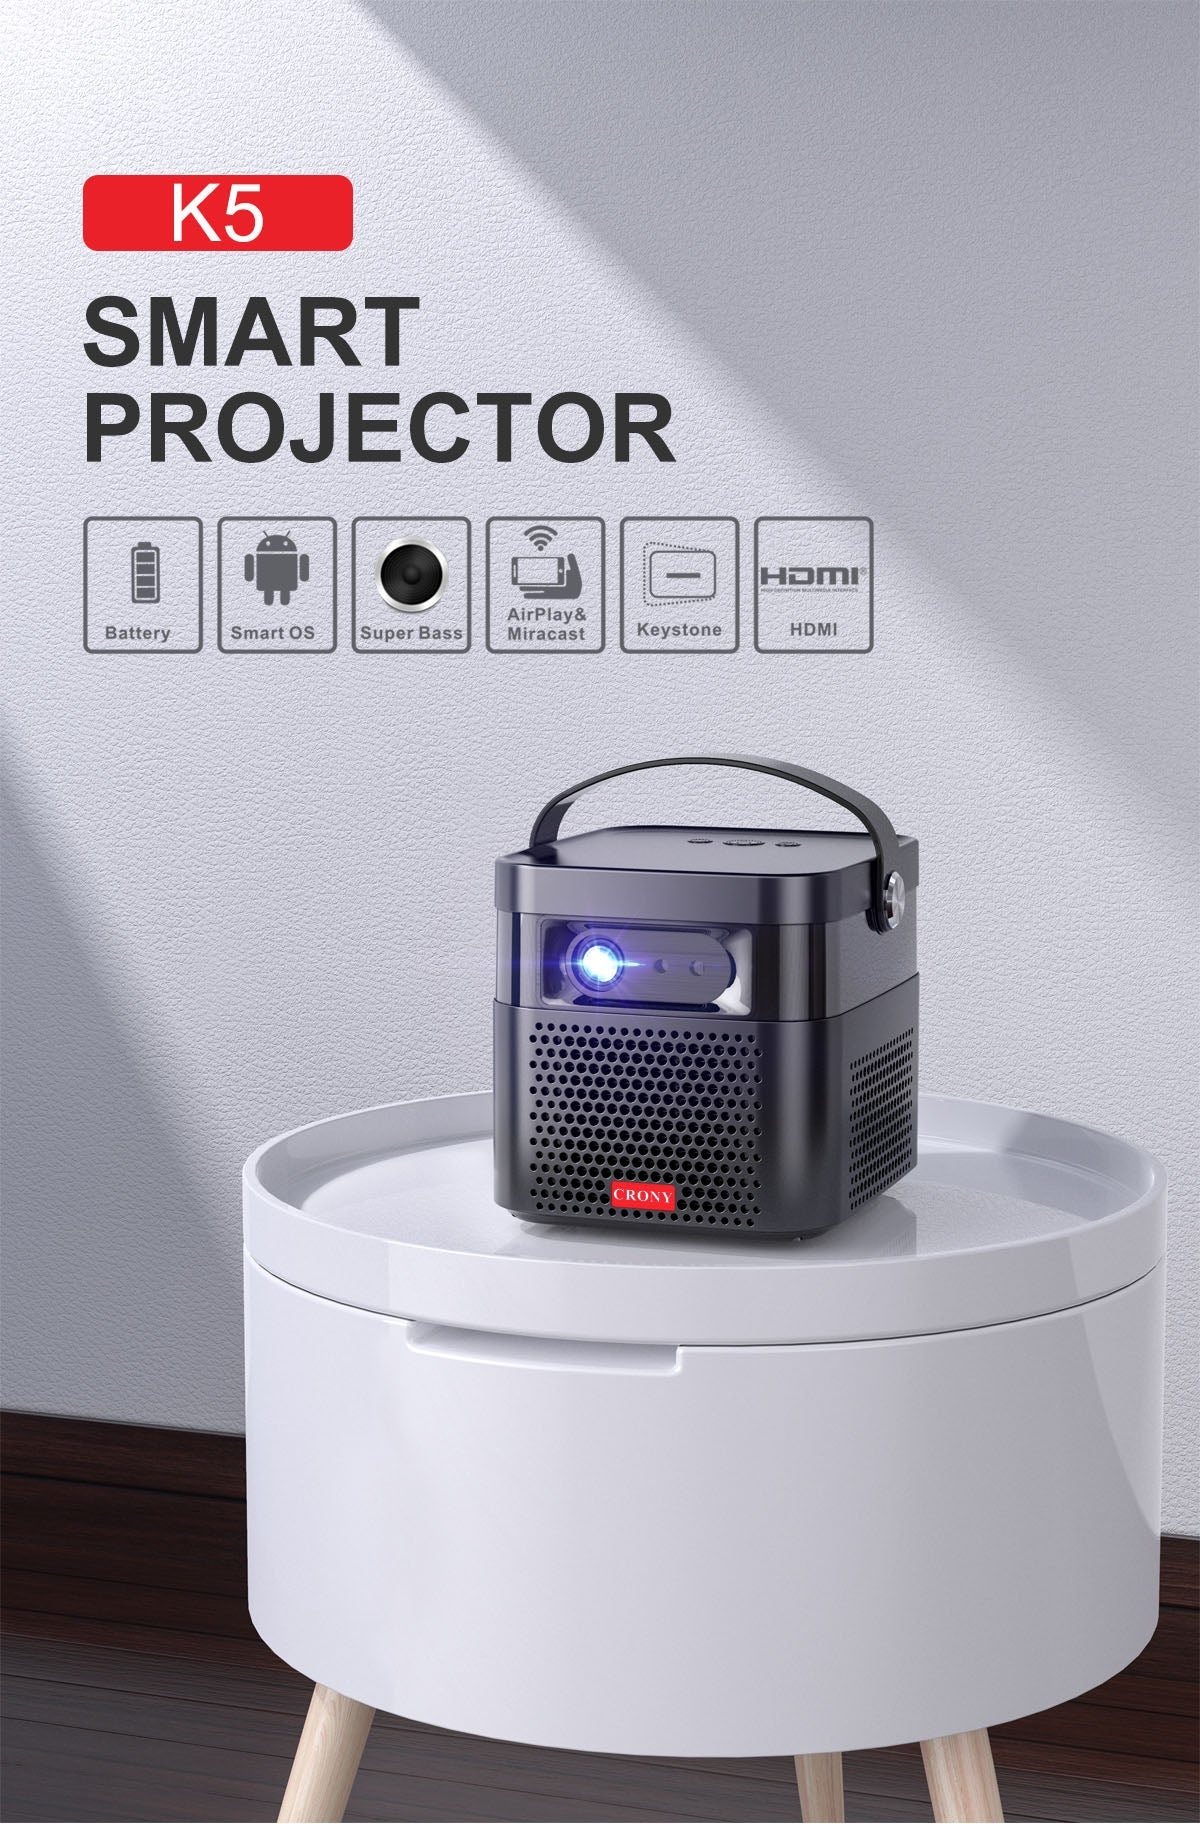 بروجكتر محمول للمعلمين بنظام أندرويد (مستعمل) CRONY K5 Projector 800 ANSI (Used) - 2}